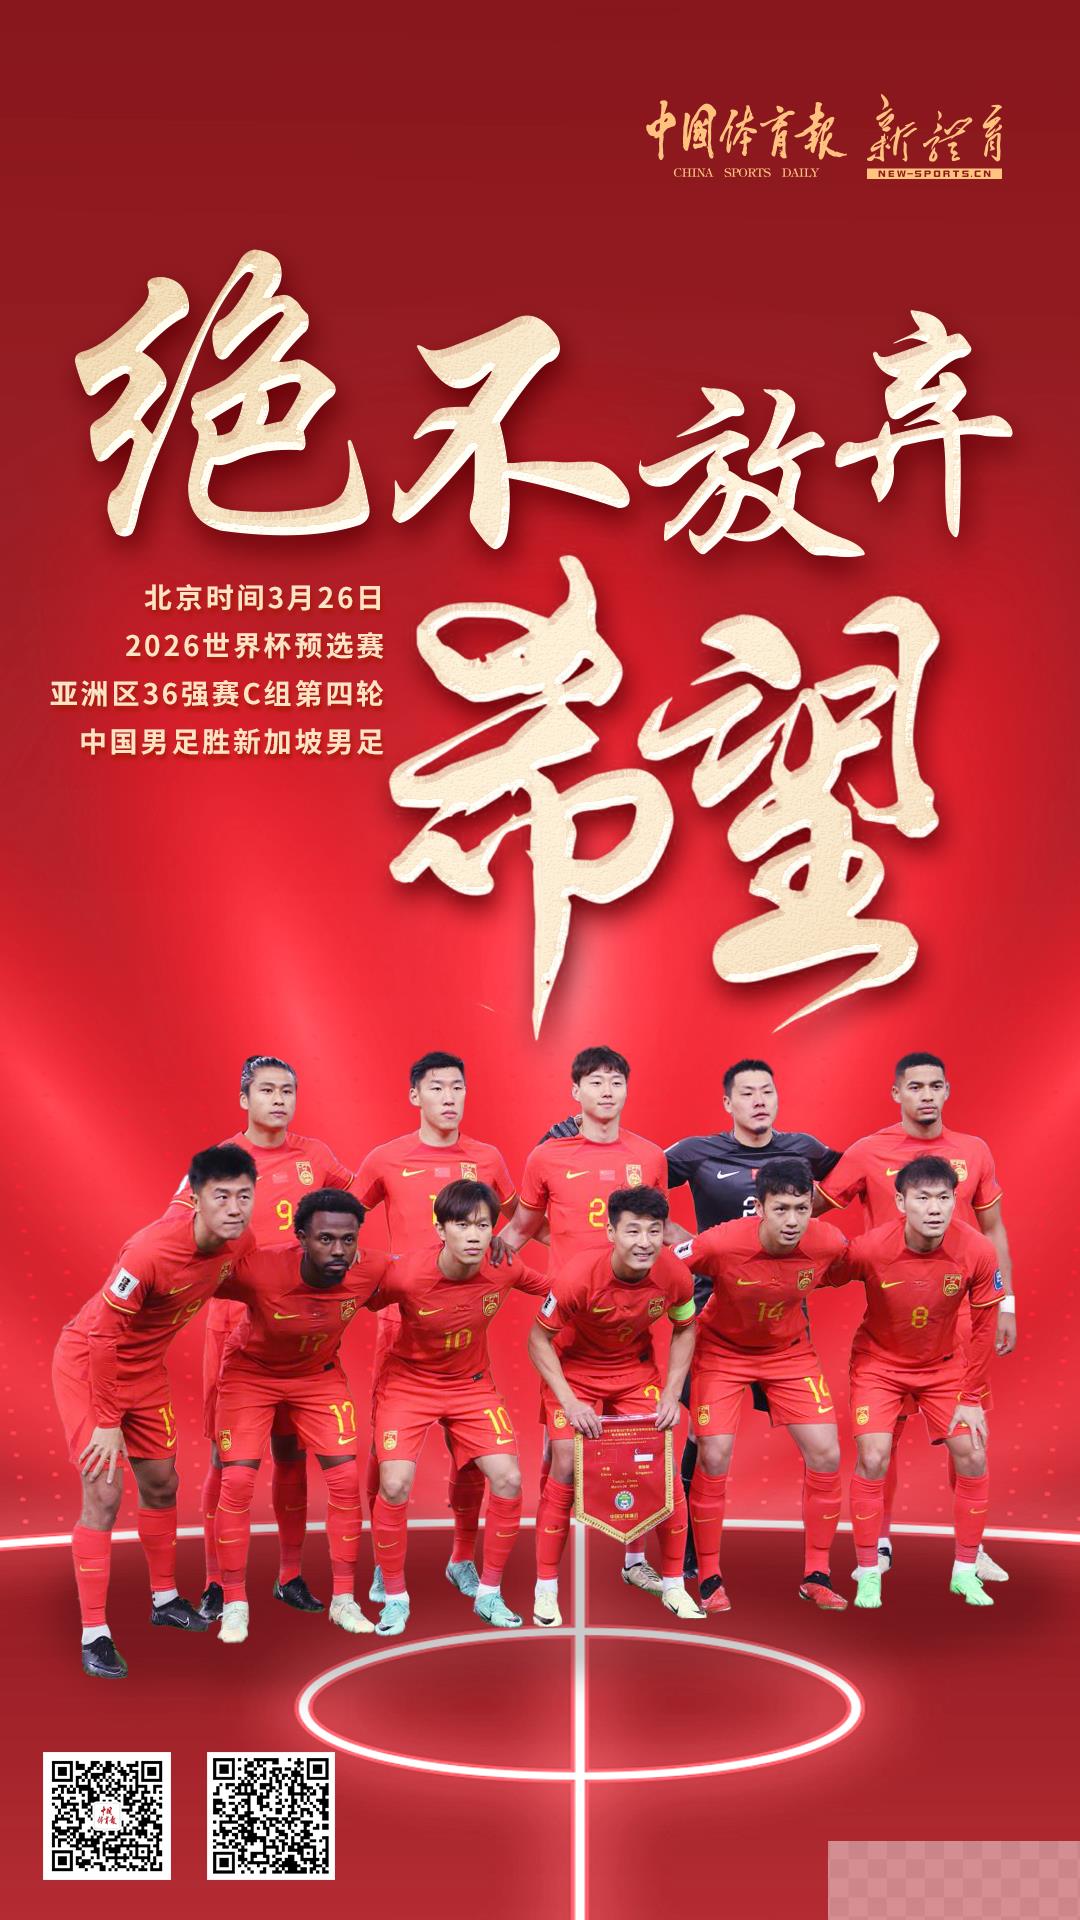 世界杯亚洲区预选赛36强赛 中国队主场战胜新加坡